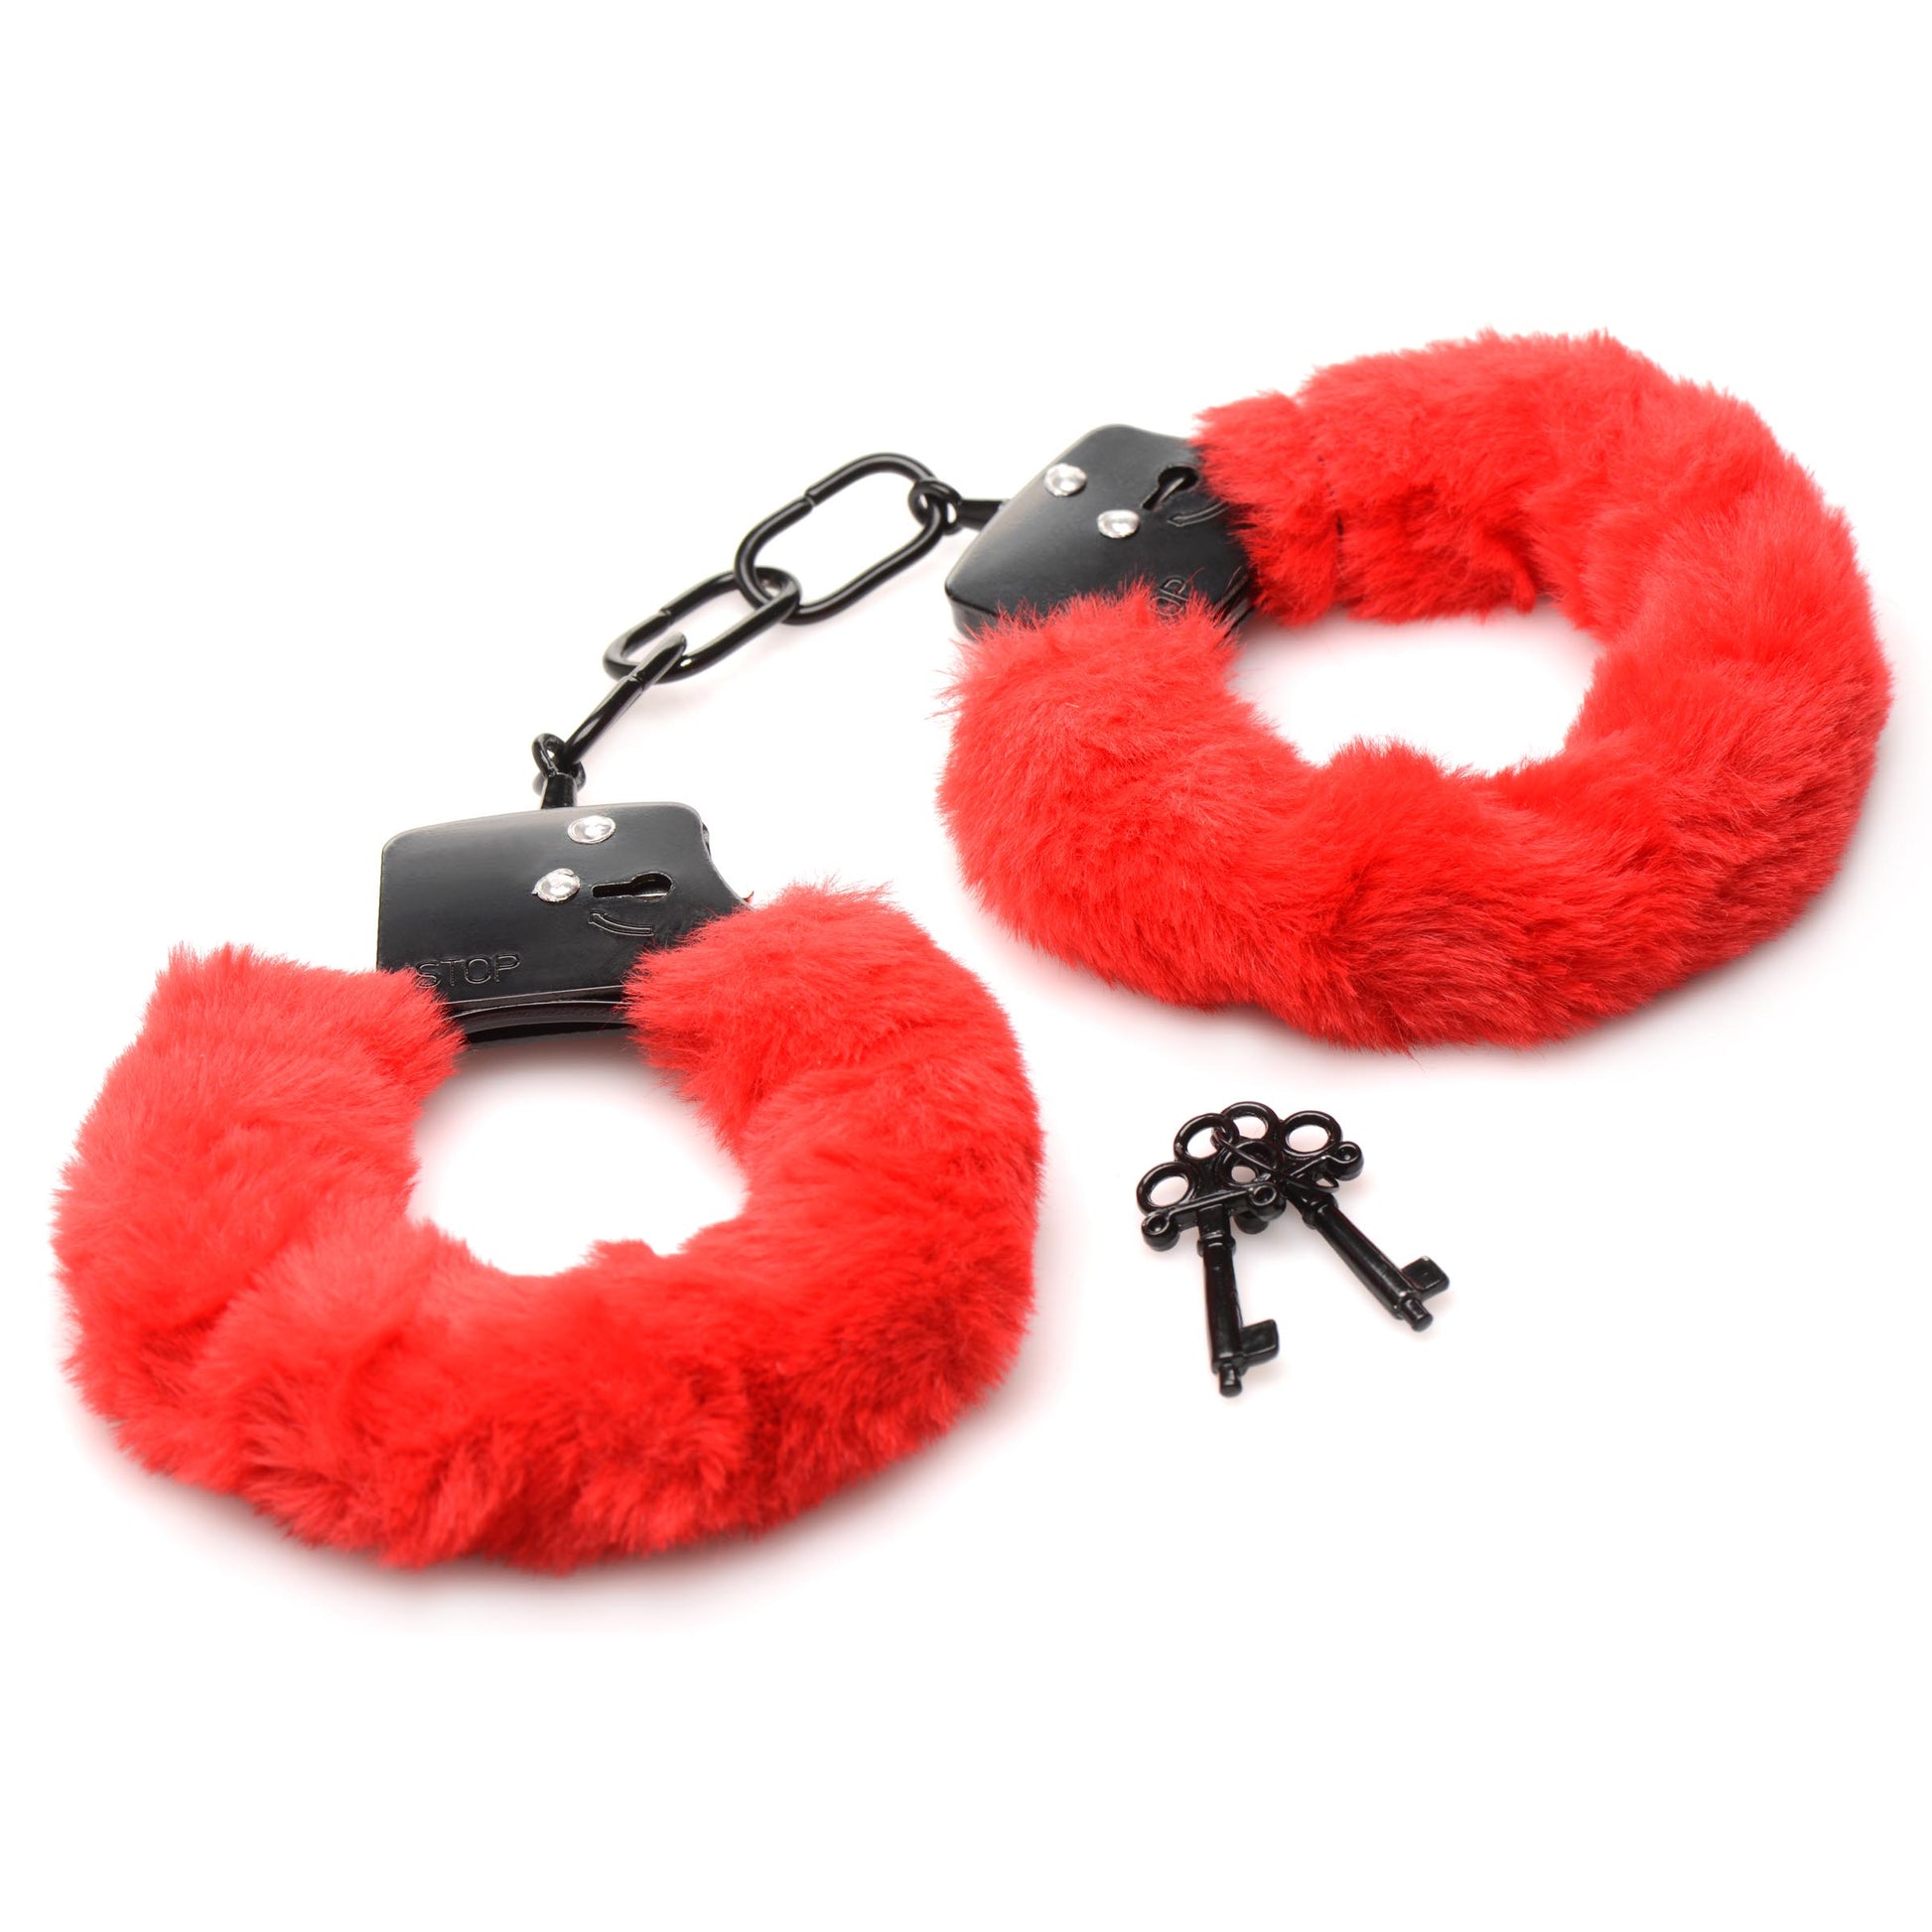 Cuffed In Fur Furry Handcuffs - Red - UABDSM